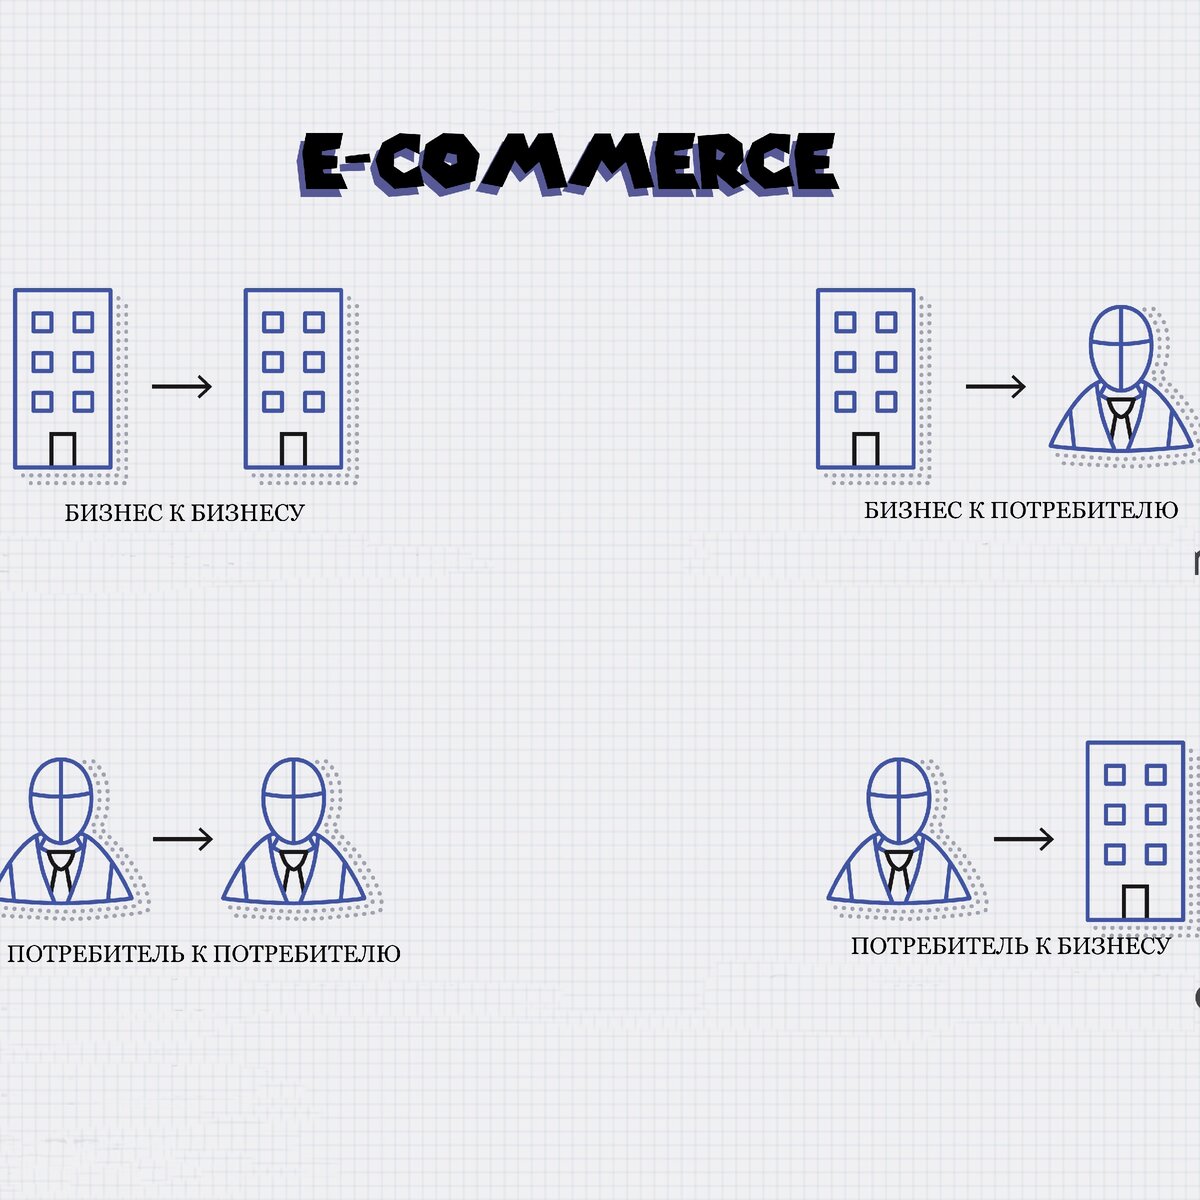 Что нужно знать о e-commerce?